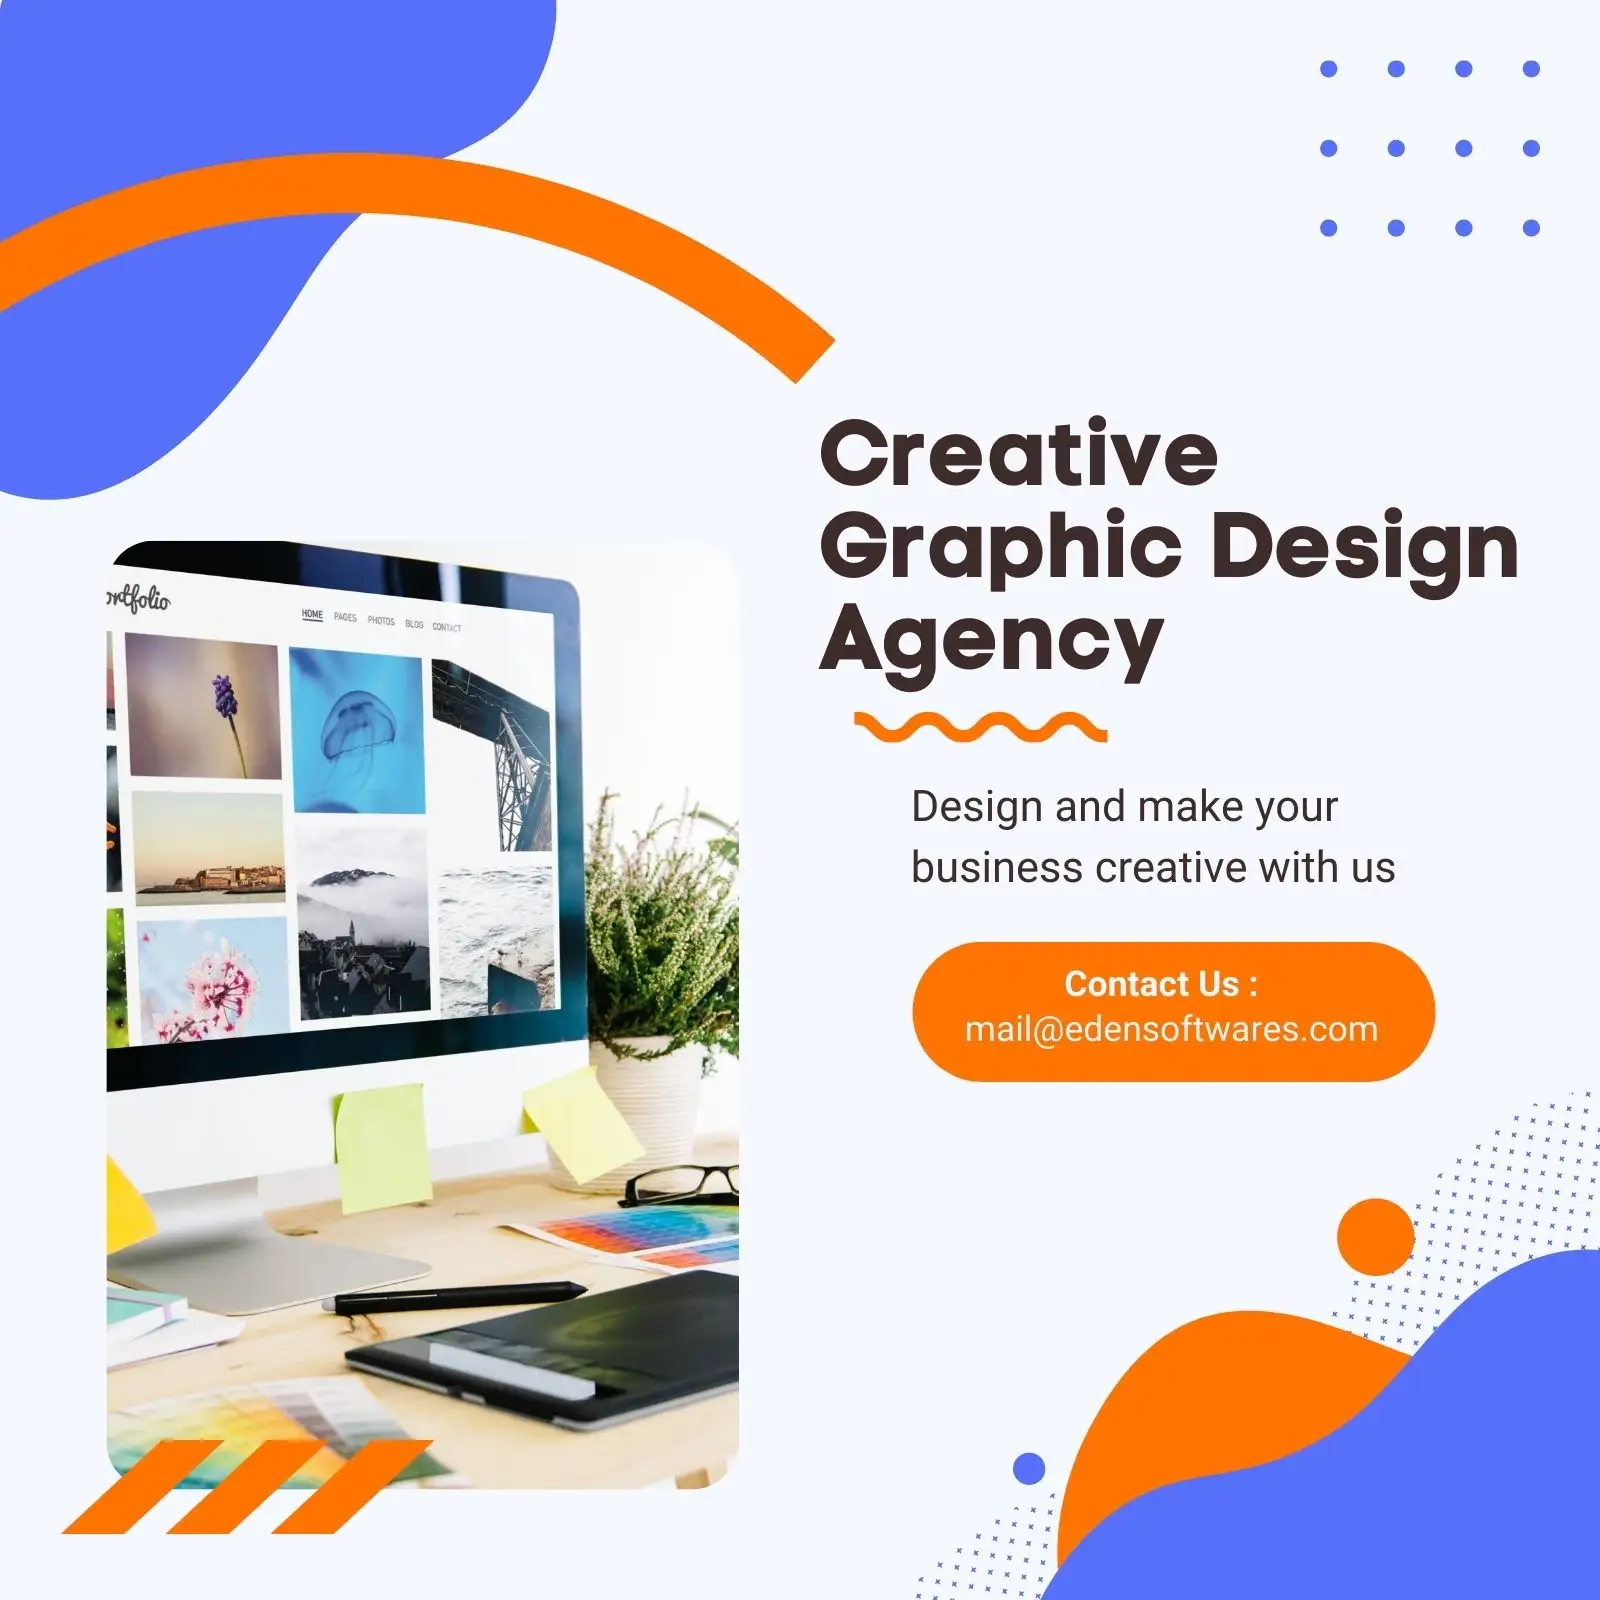 Лучшая компания по производству графических дизайнов в Индии, которая создает эксклюзивные универсальные и инновационные дизайны для компаний по всему миру